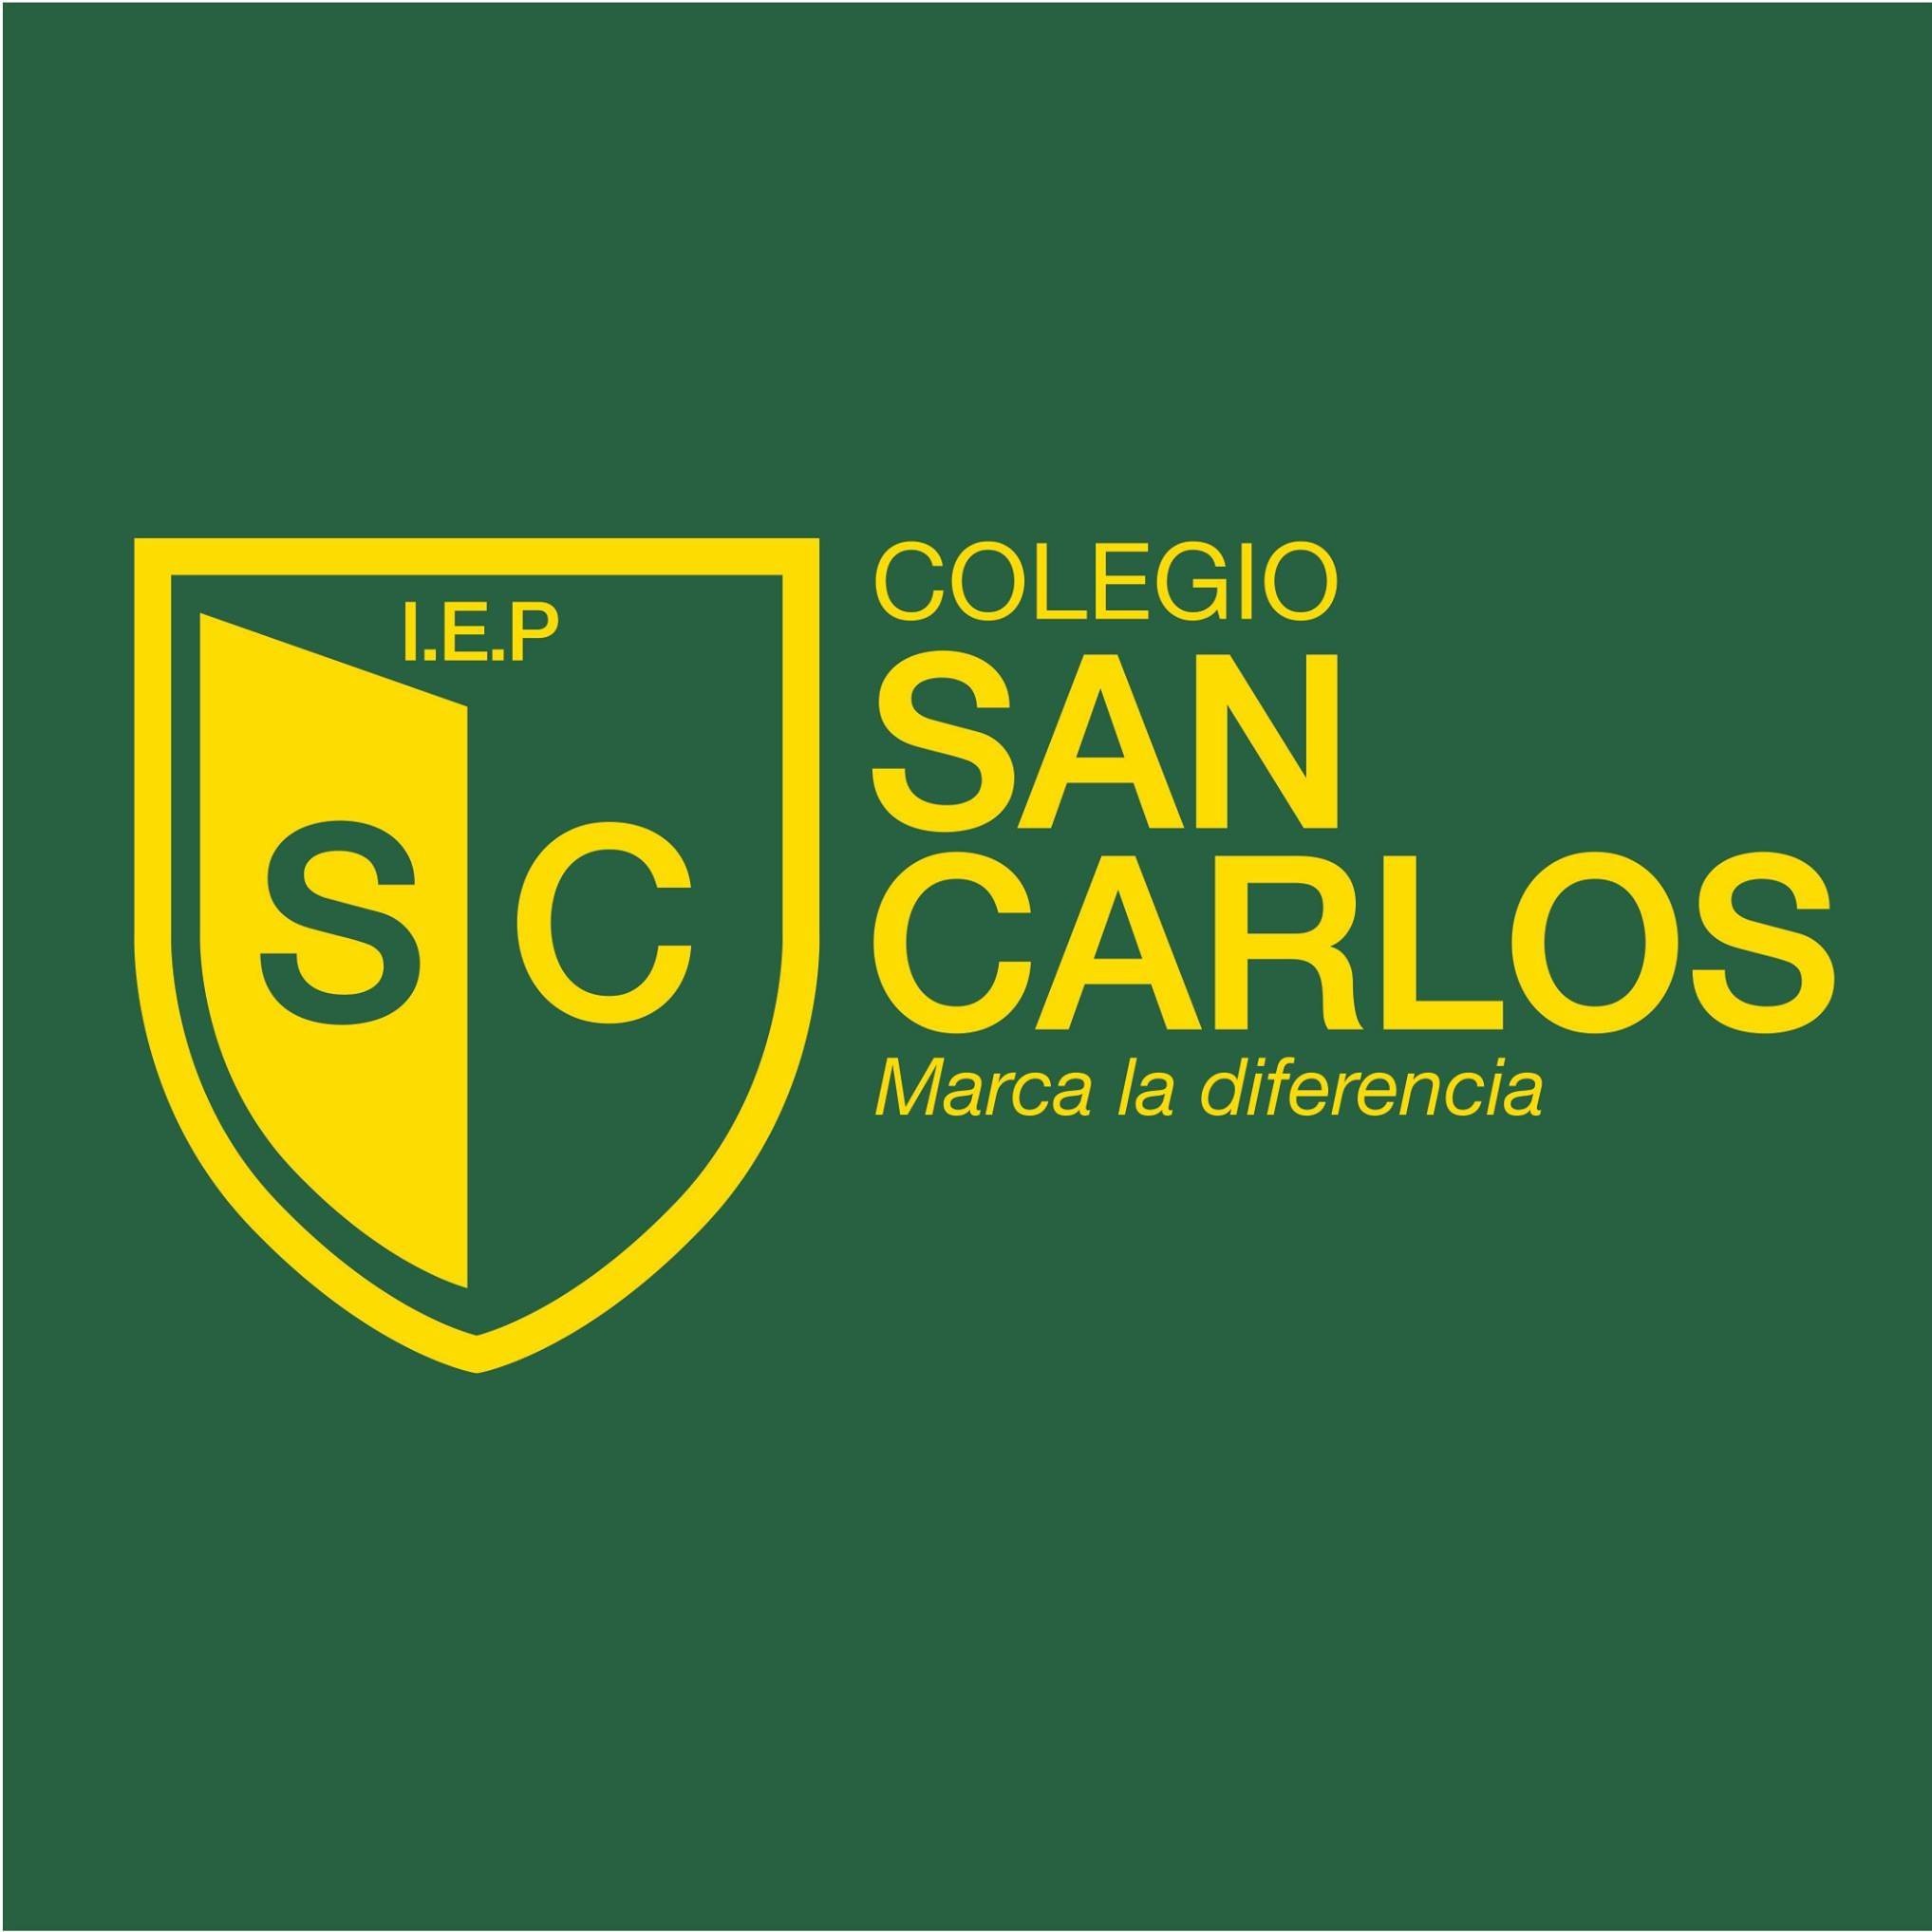 Logo Colegio San Carlos